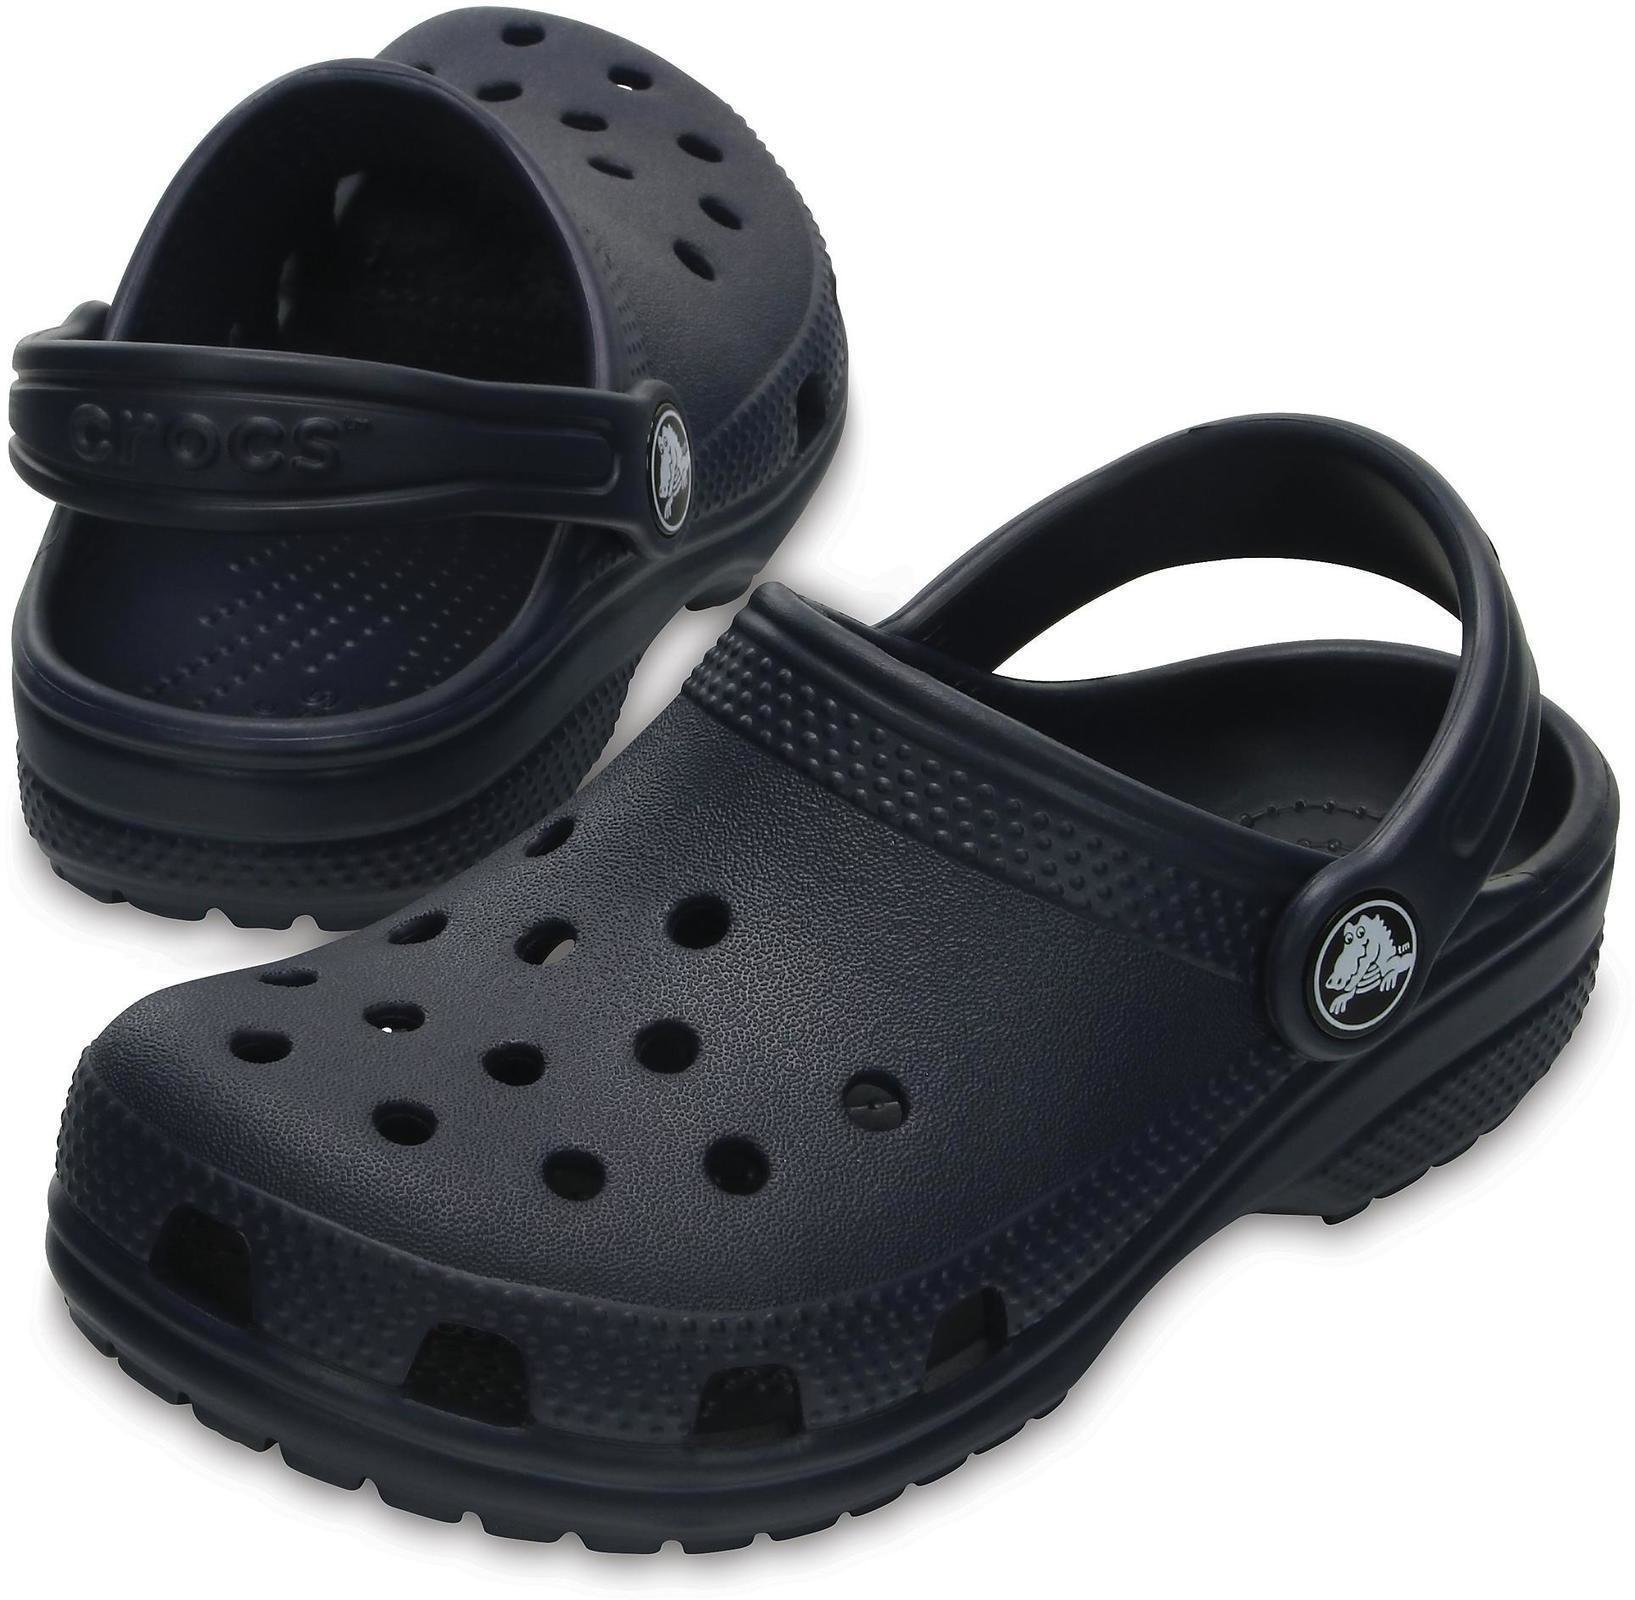 Dječje cipele za jedrenje Crocs Kids' Classic Clog Navy 27-28